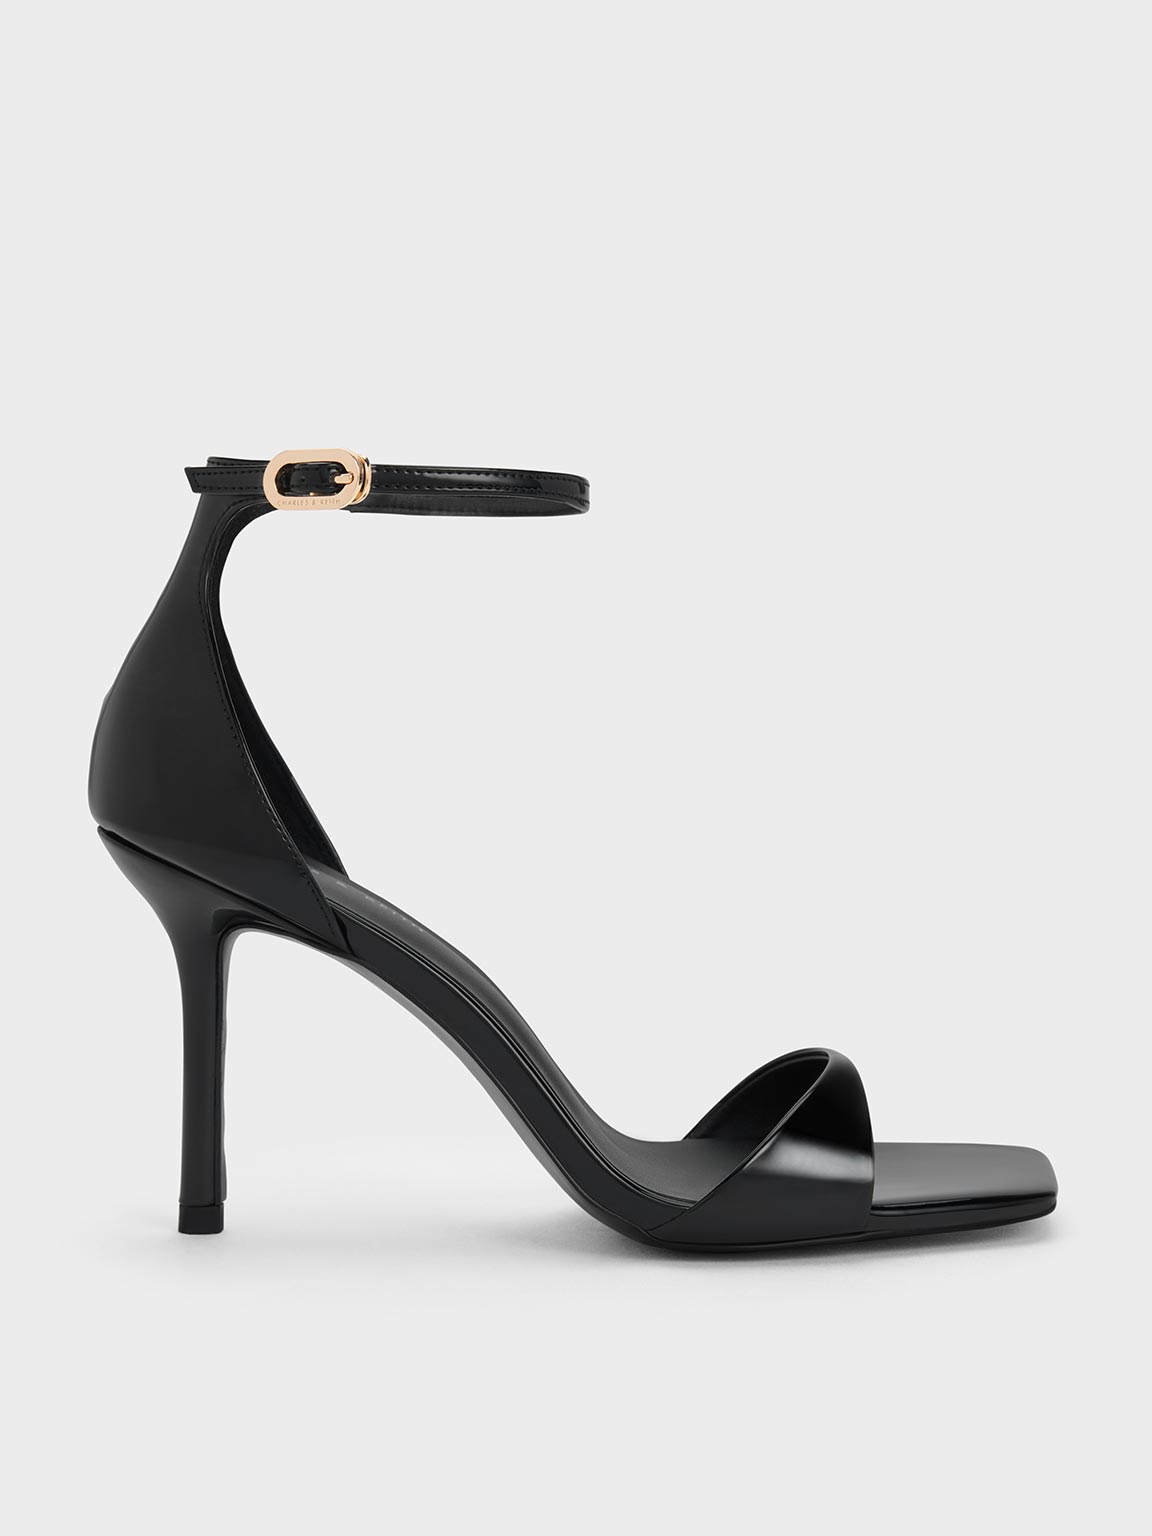 Toestep Women Pointed Black Velvet Ethic Block Heels Sandals For Women and  Girls For Wedding &